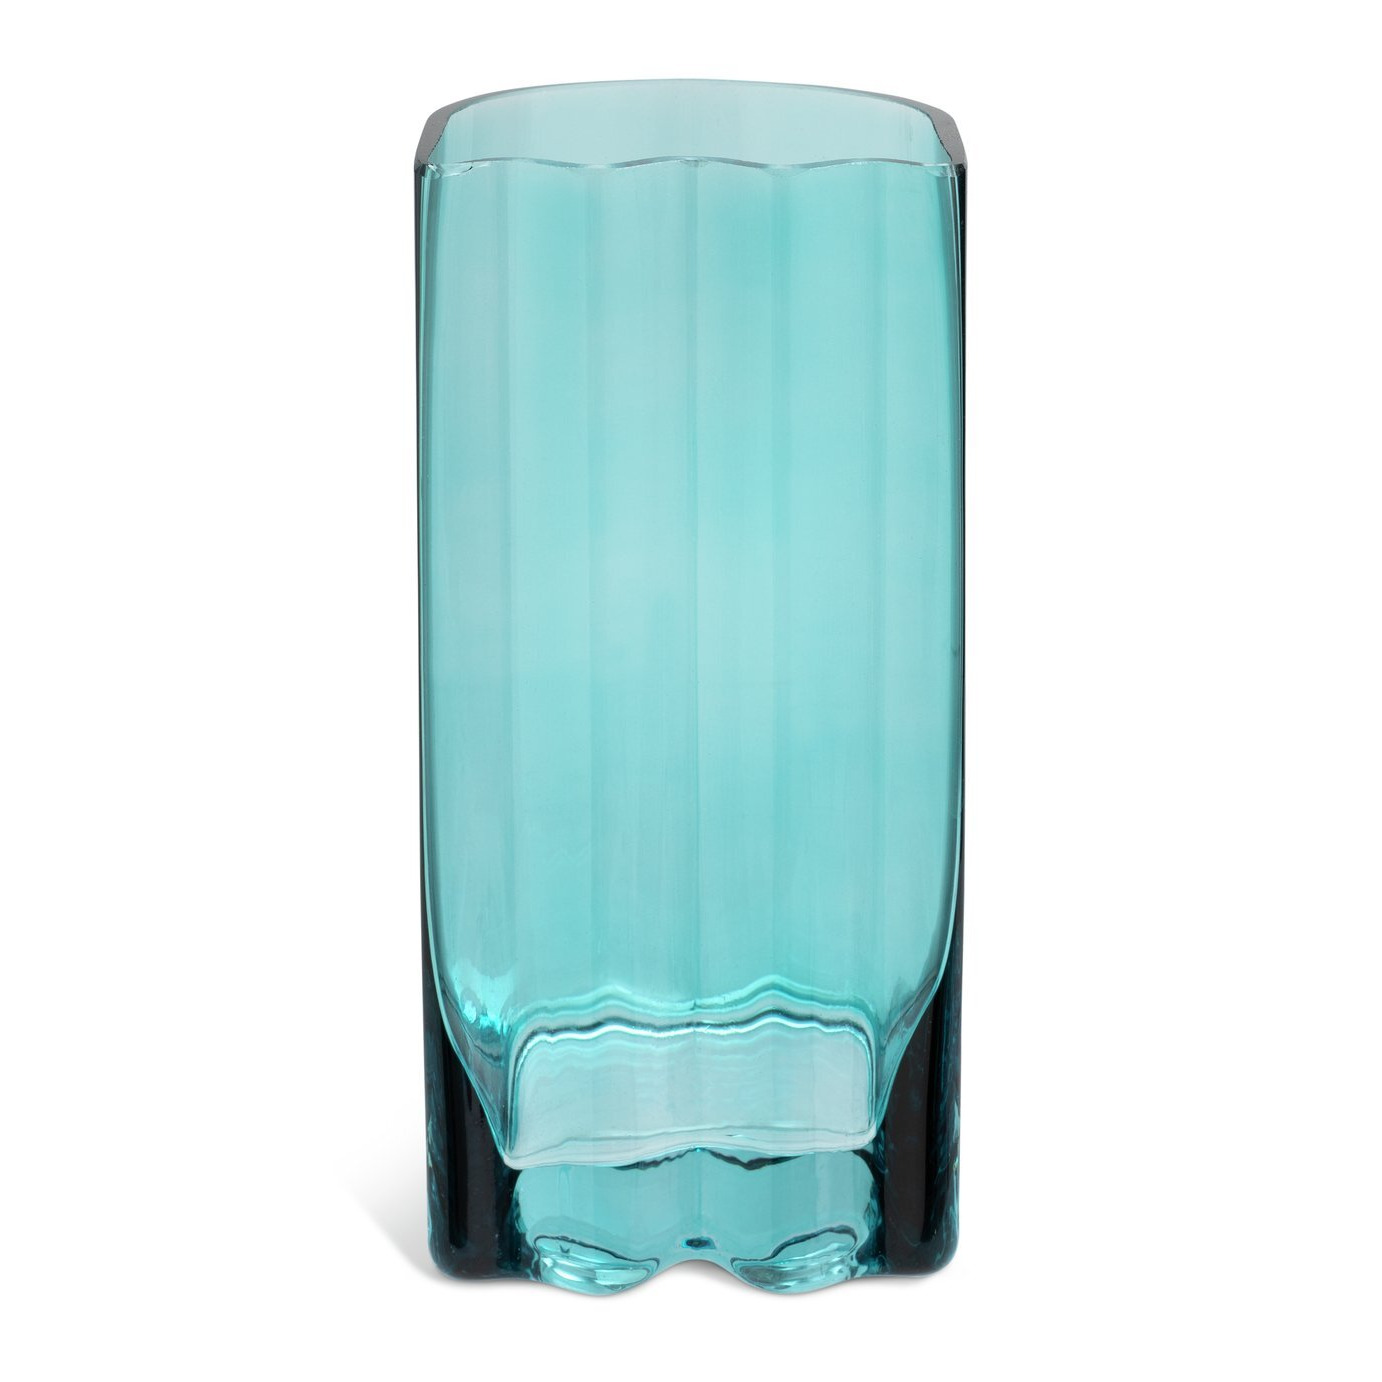 Habitat 60 Wiggle Glass Vase - Small - Blue - image 1